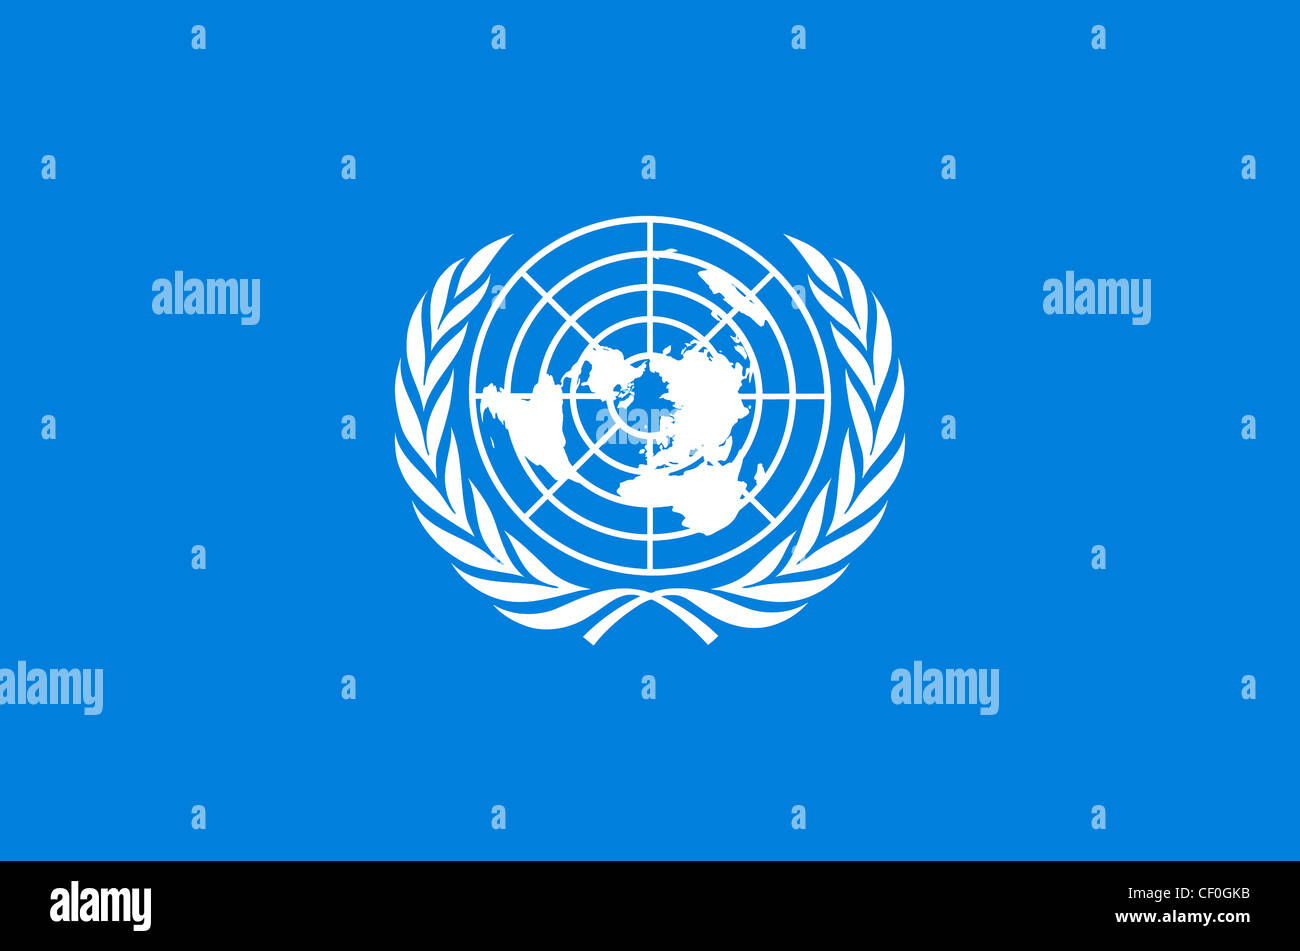 Flagge der Vereinten Nationen mit dem Wappen der Organisation. Stockfoto